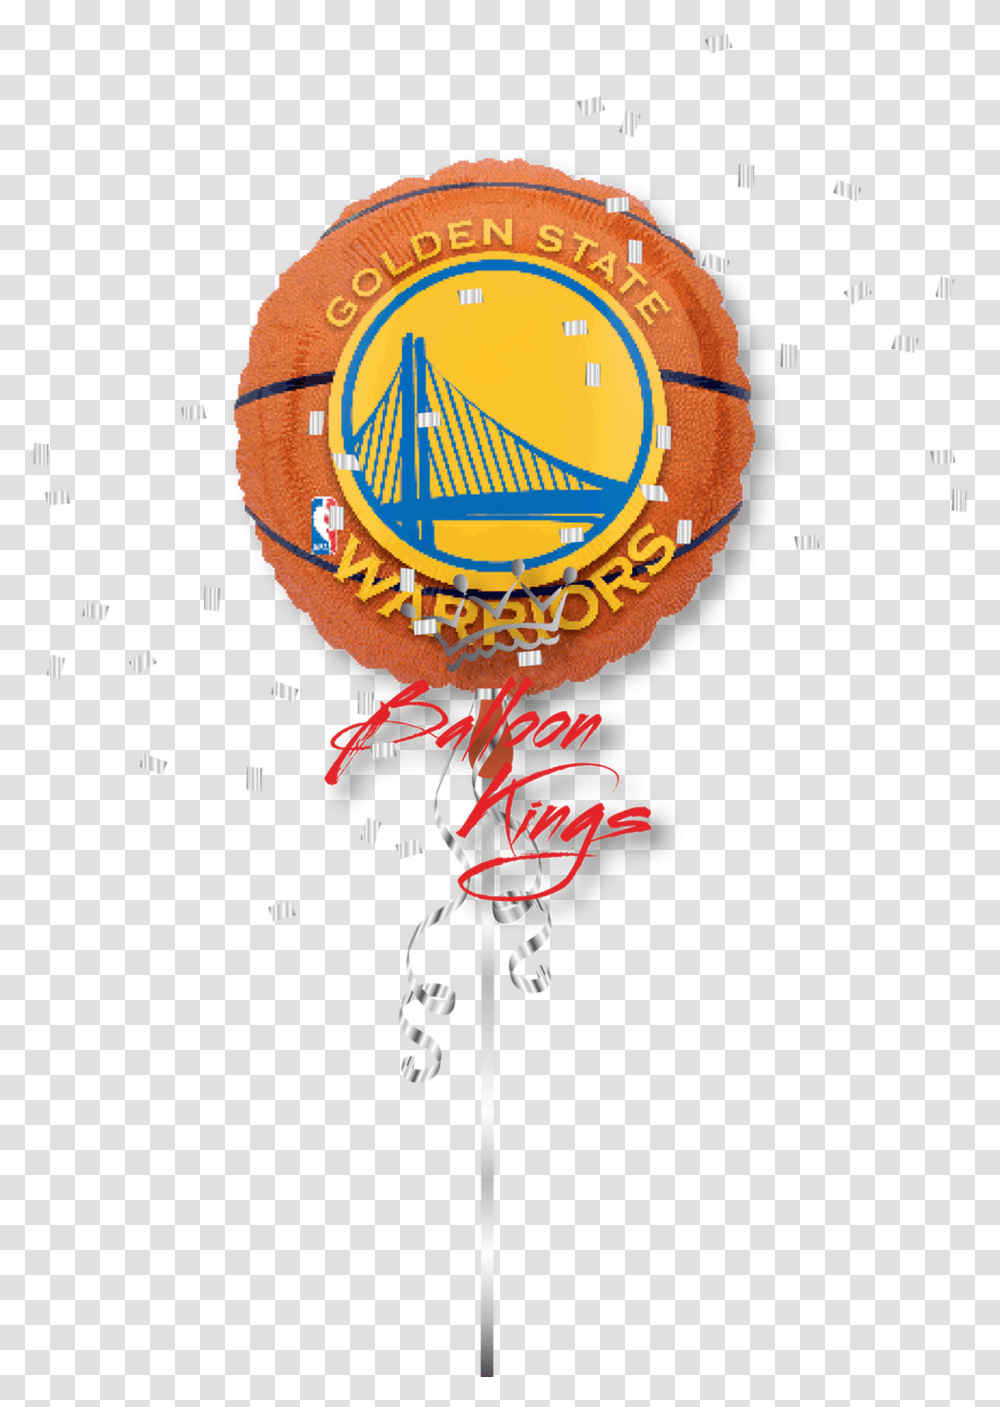 Golden State Warriors Celtics Balloon, Logo, Trademark, Clock Tower Transparent Png